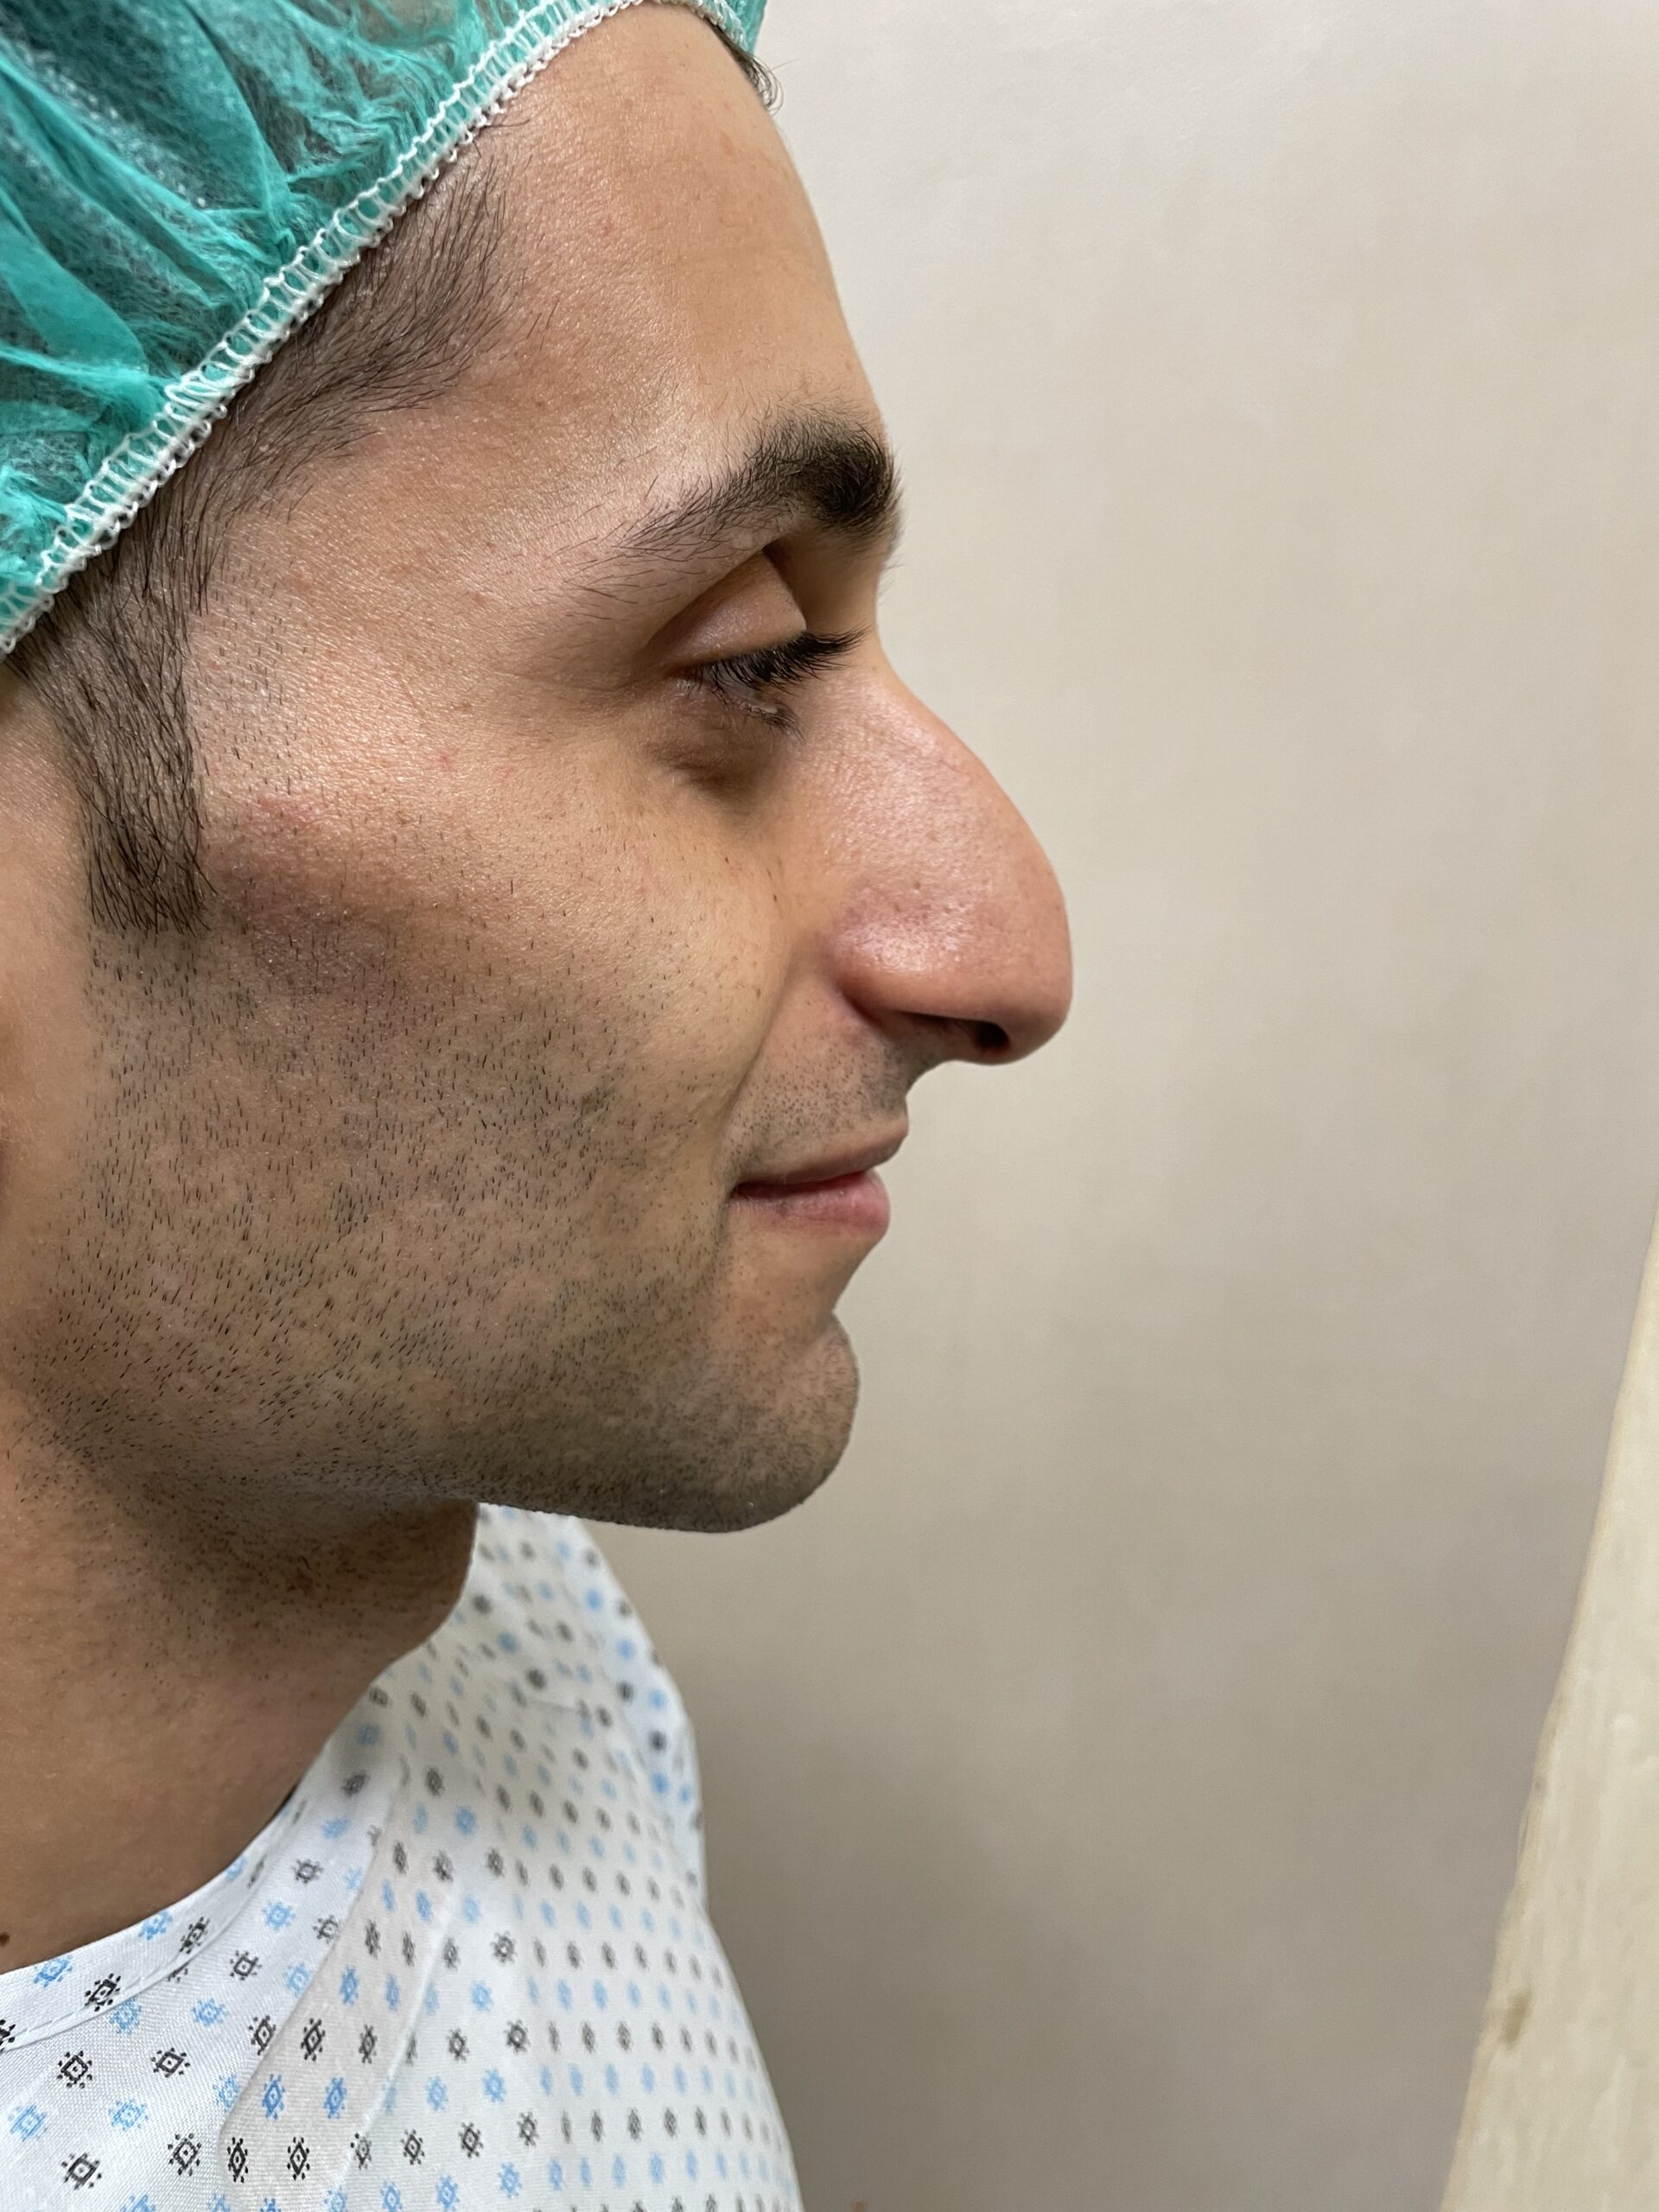 IMG scaled - epilazione - Chirurgo plastico Catania